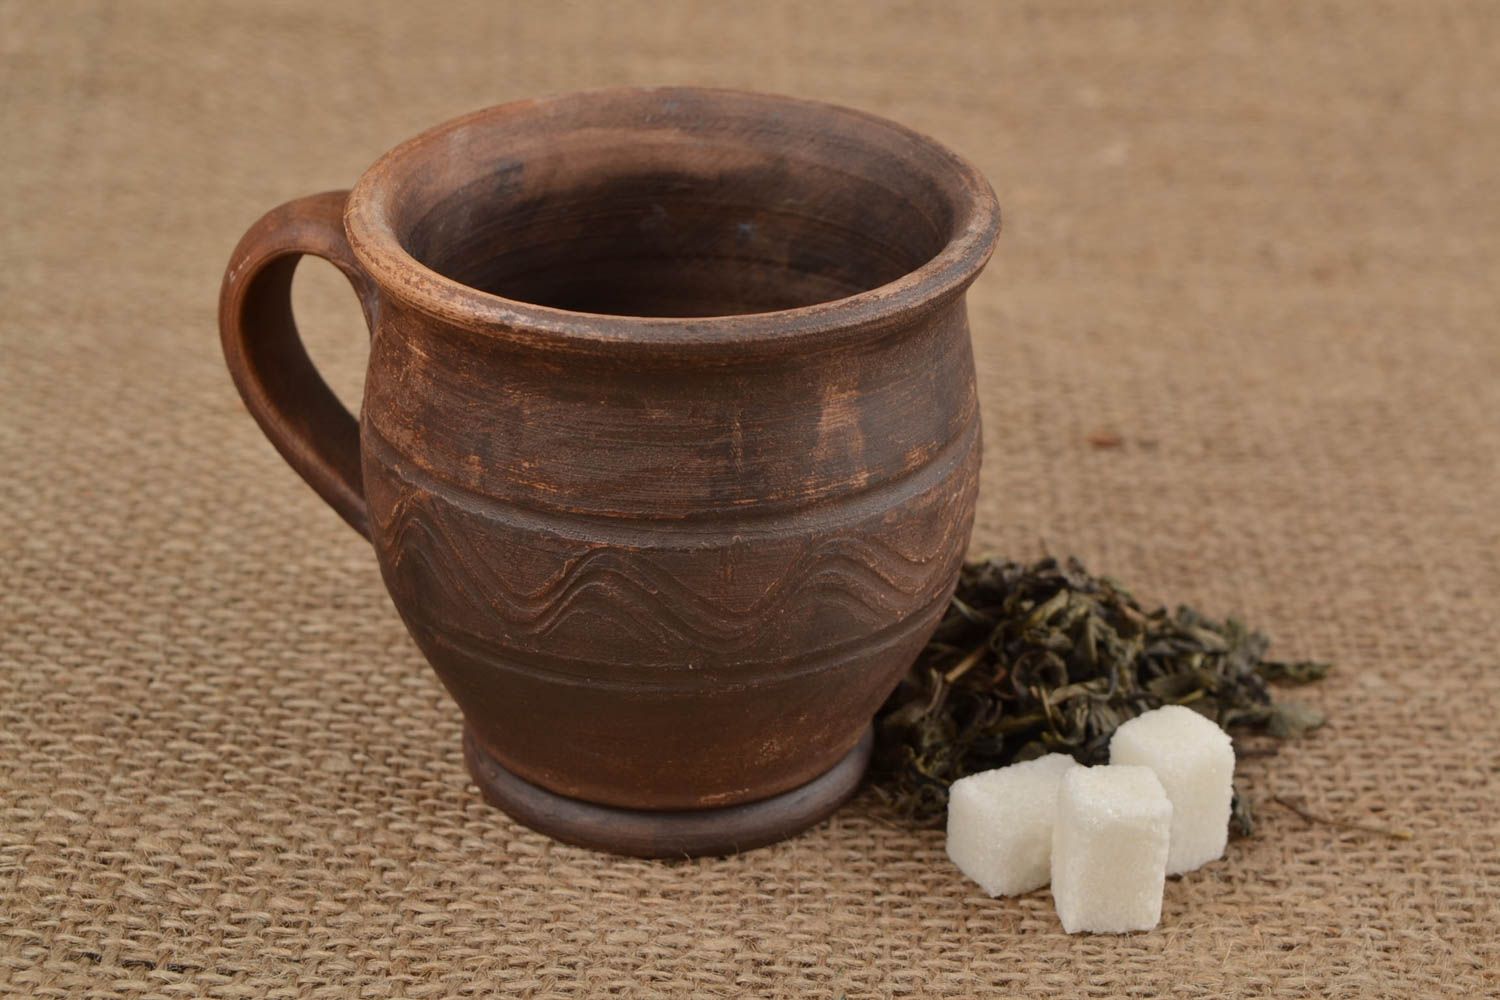 Handmade Kaffeetasse aus Keramik in Milchbrennen Technik in Braun schön 200 ml foto 1